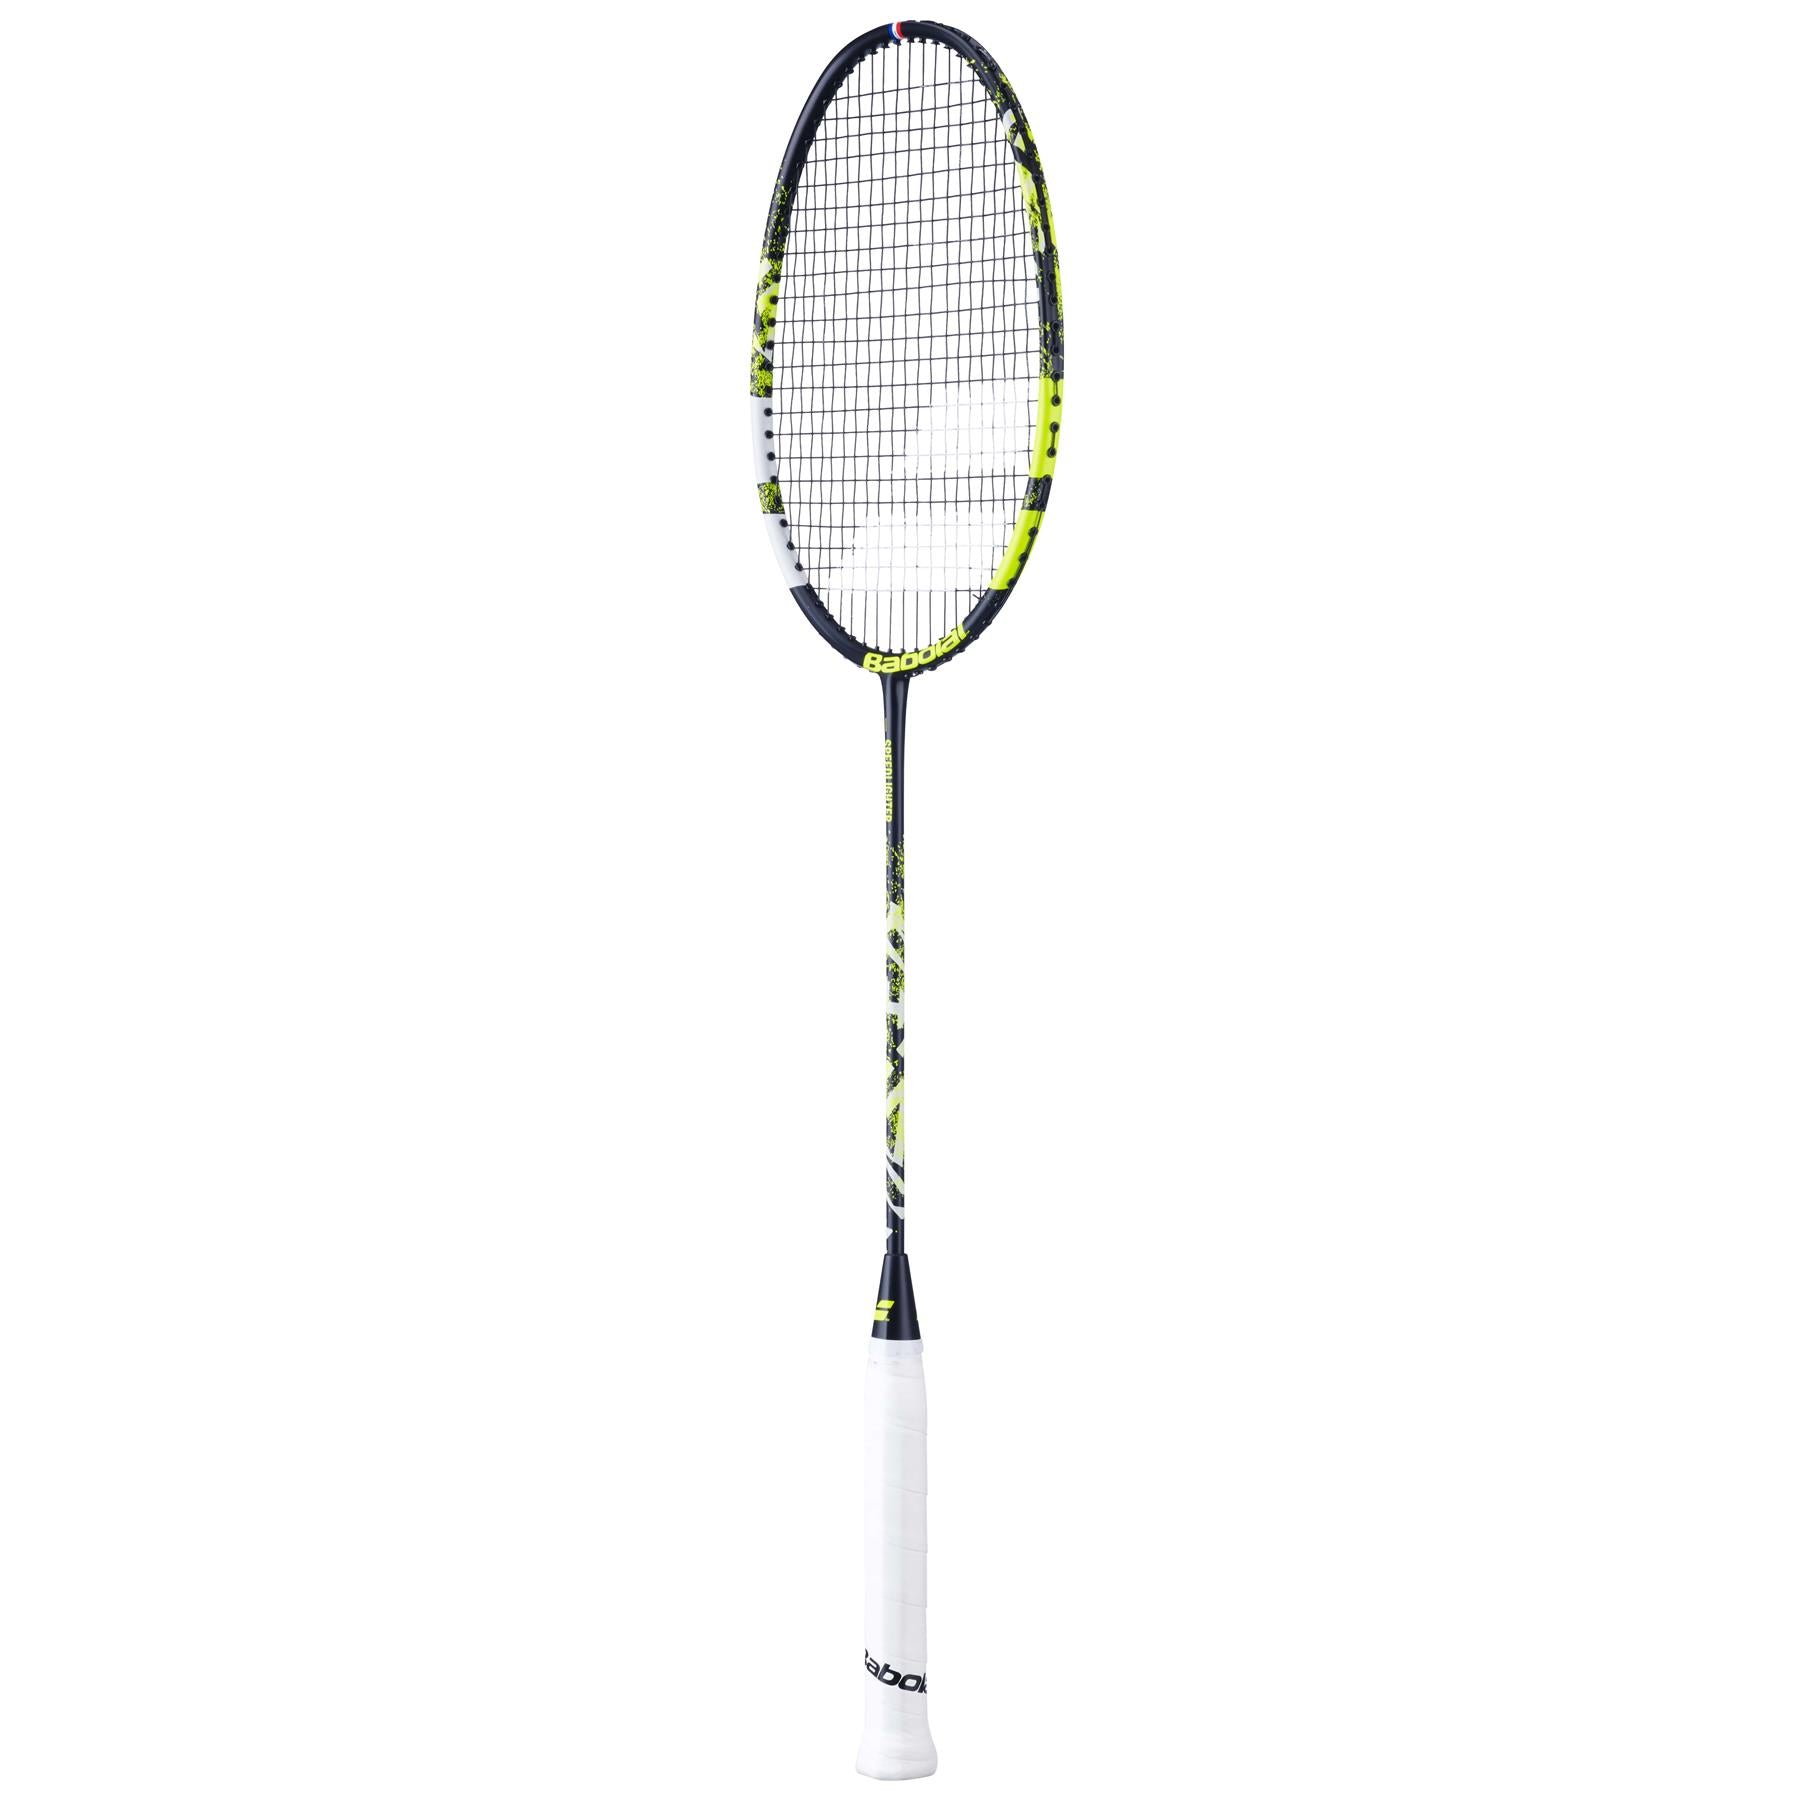 Babolat Speedlighter Junior Badminton Racket - Black / Green - Left